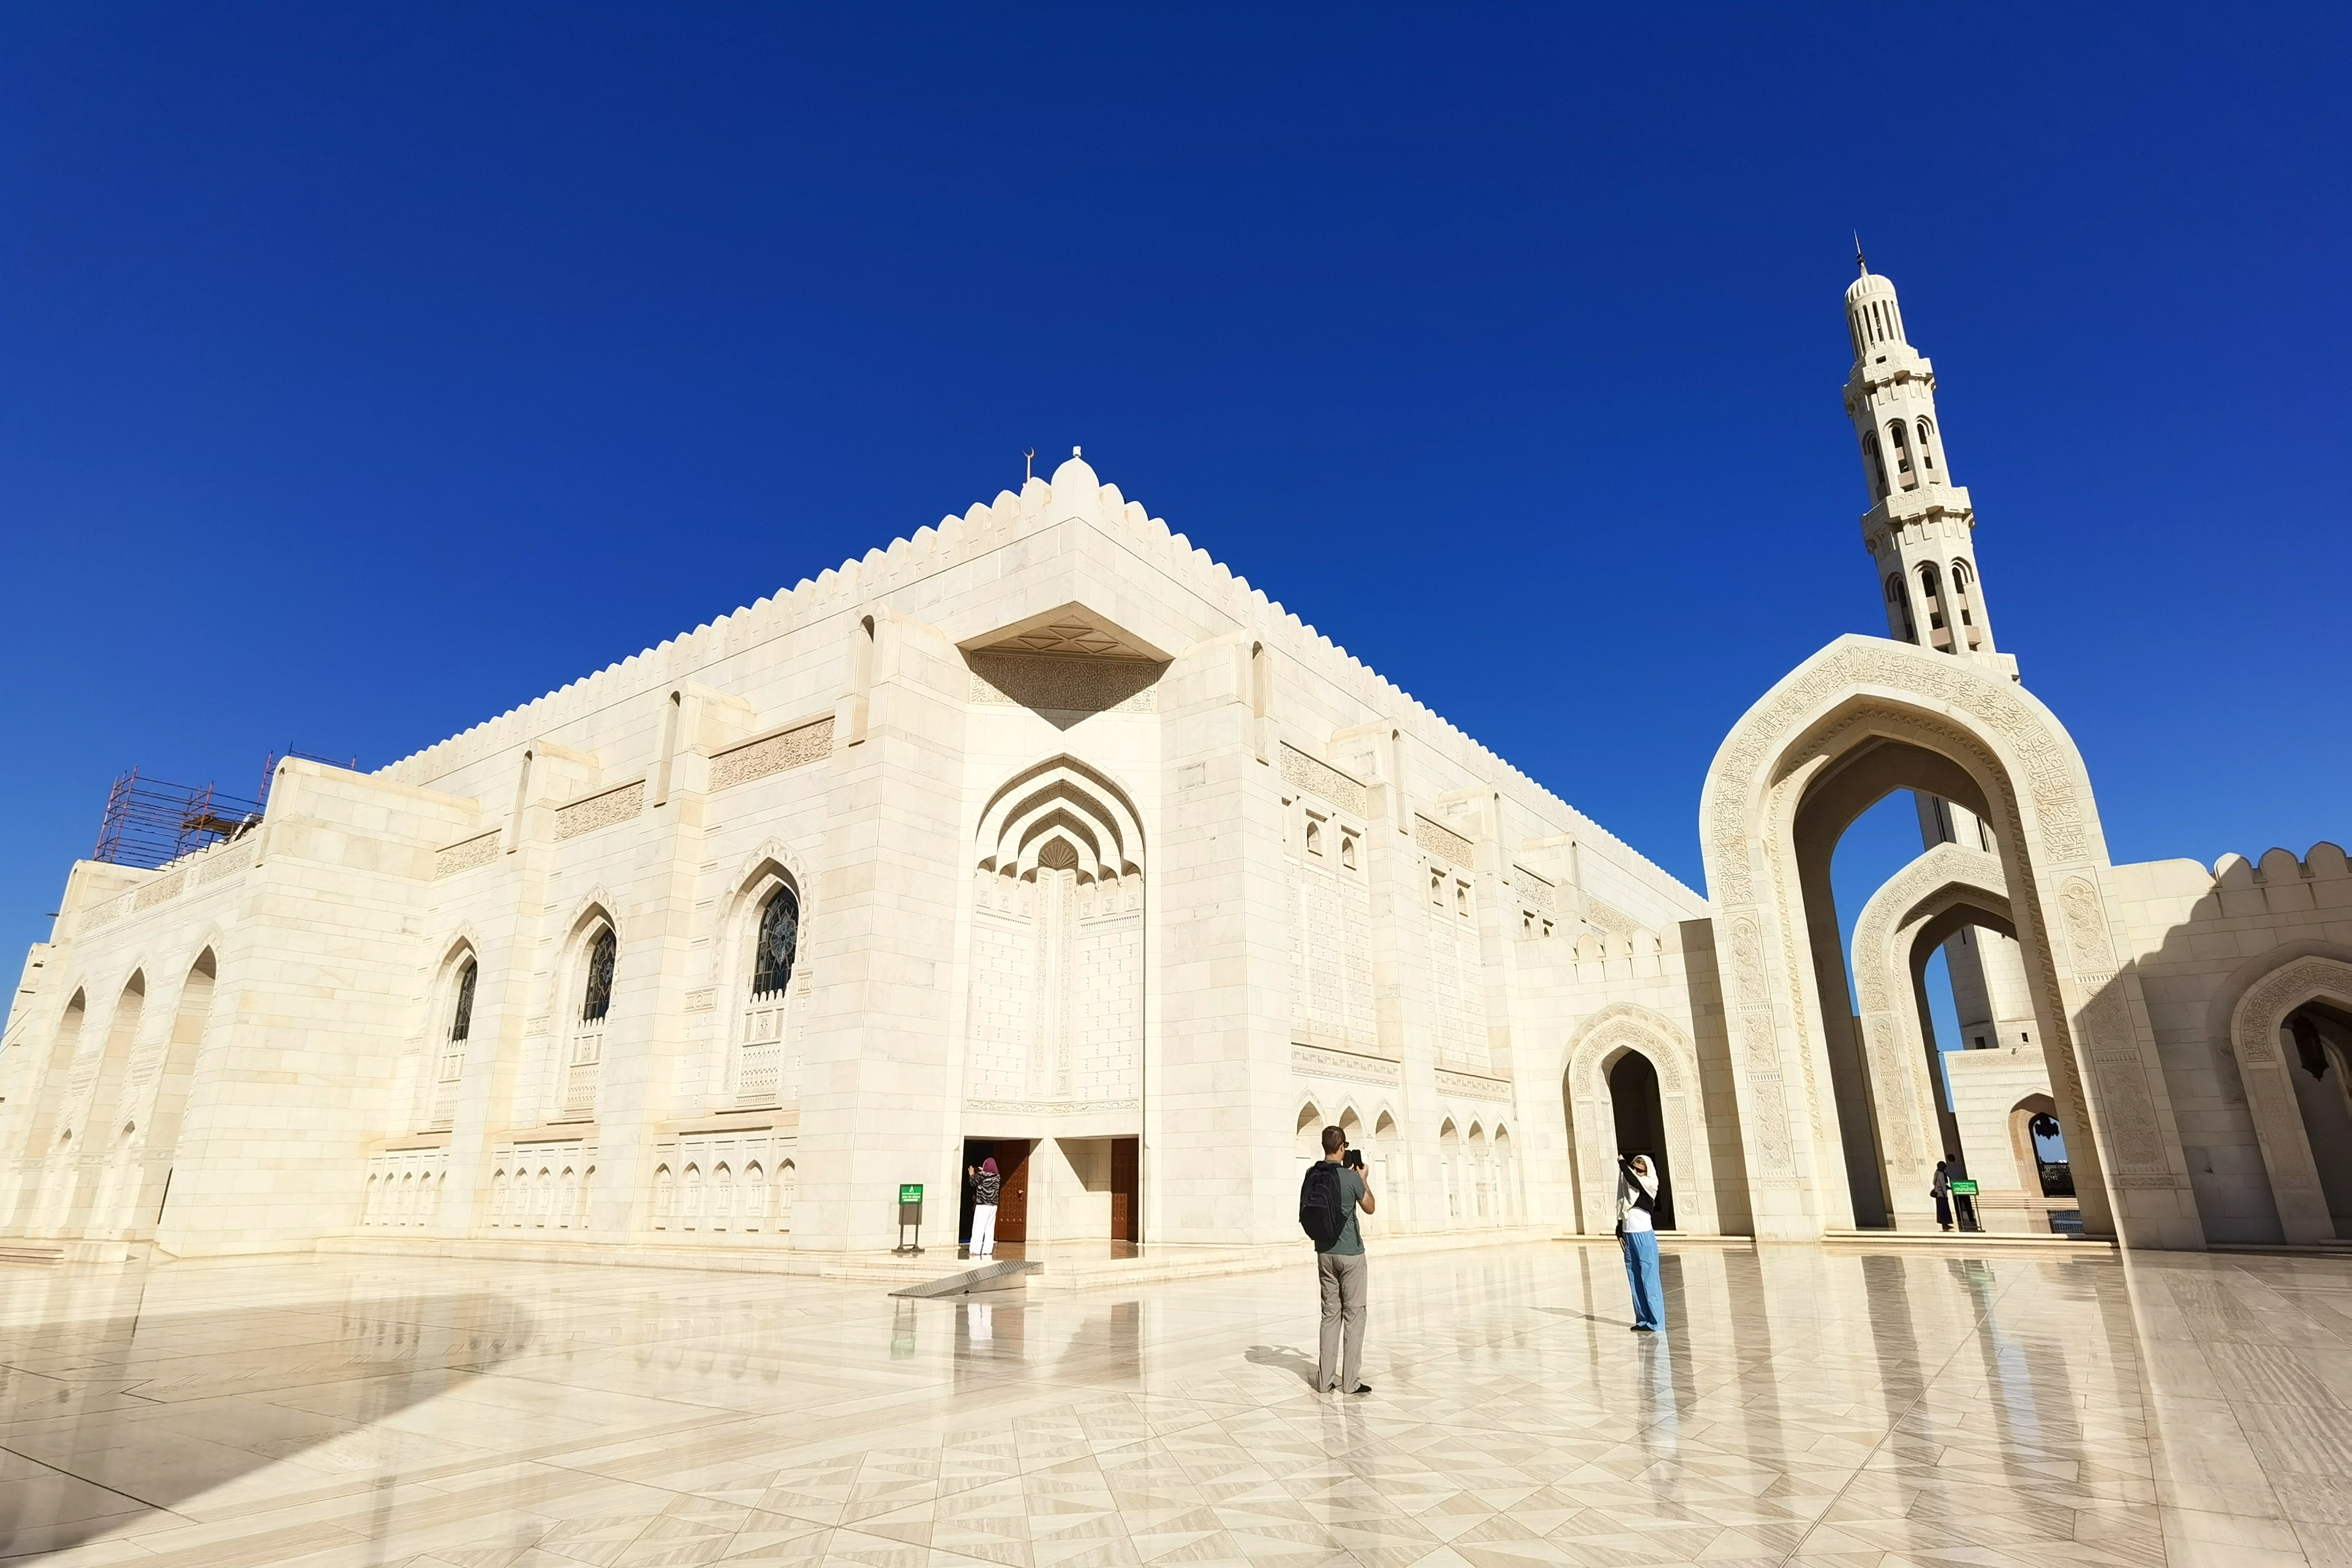 原创 这座恢弘绝美的清真寺,是全球旅行者到访这个神秘小国的理由